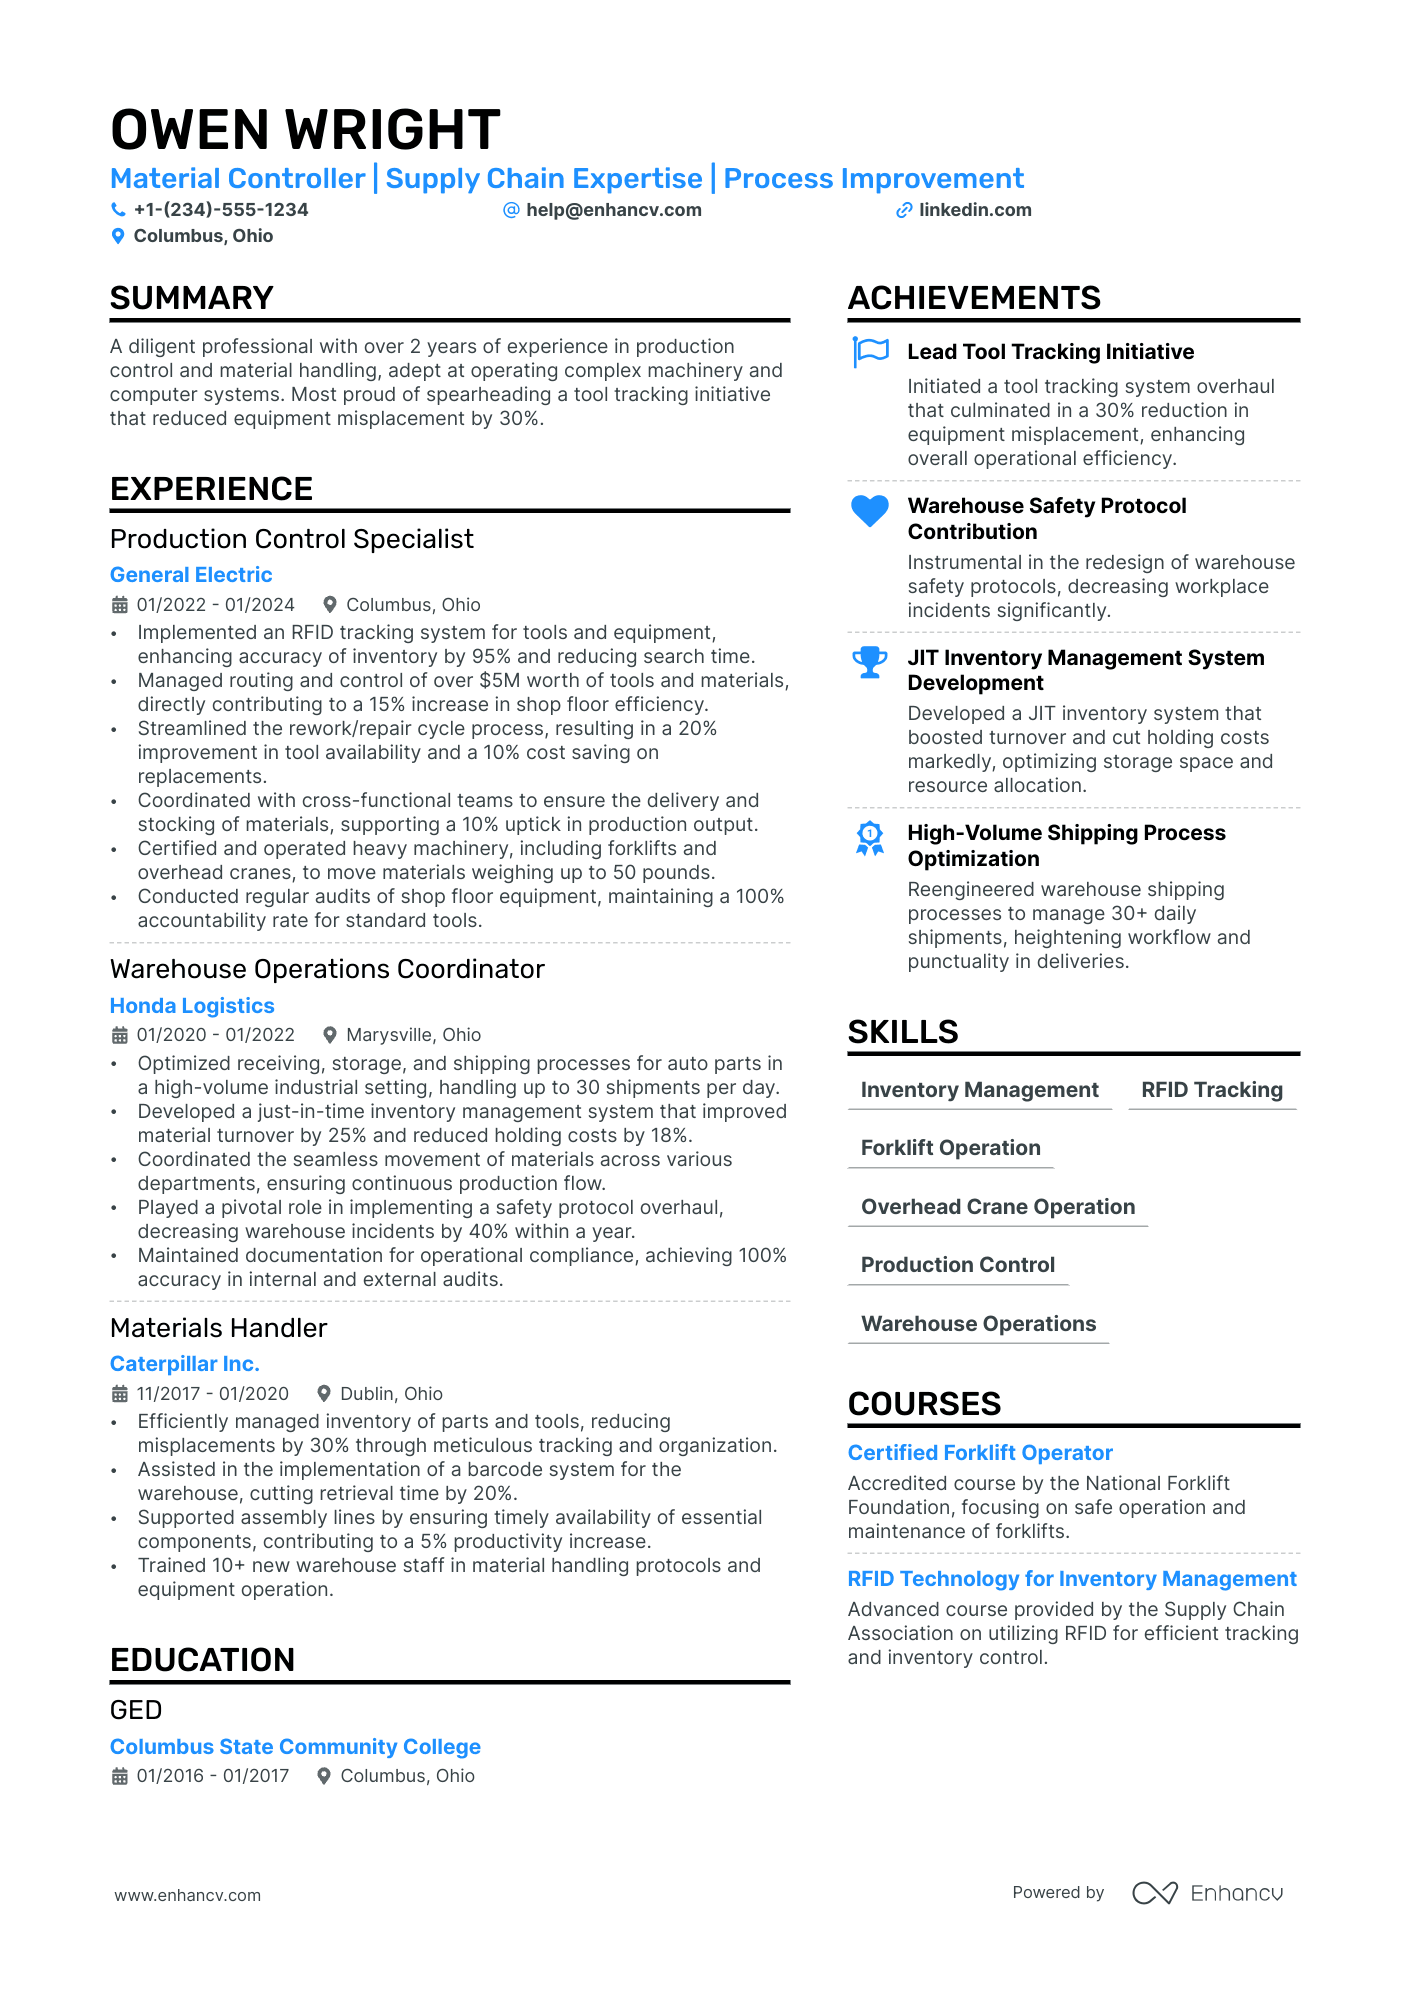 Material Handler resume example